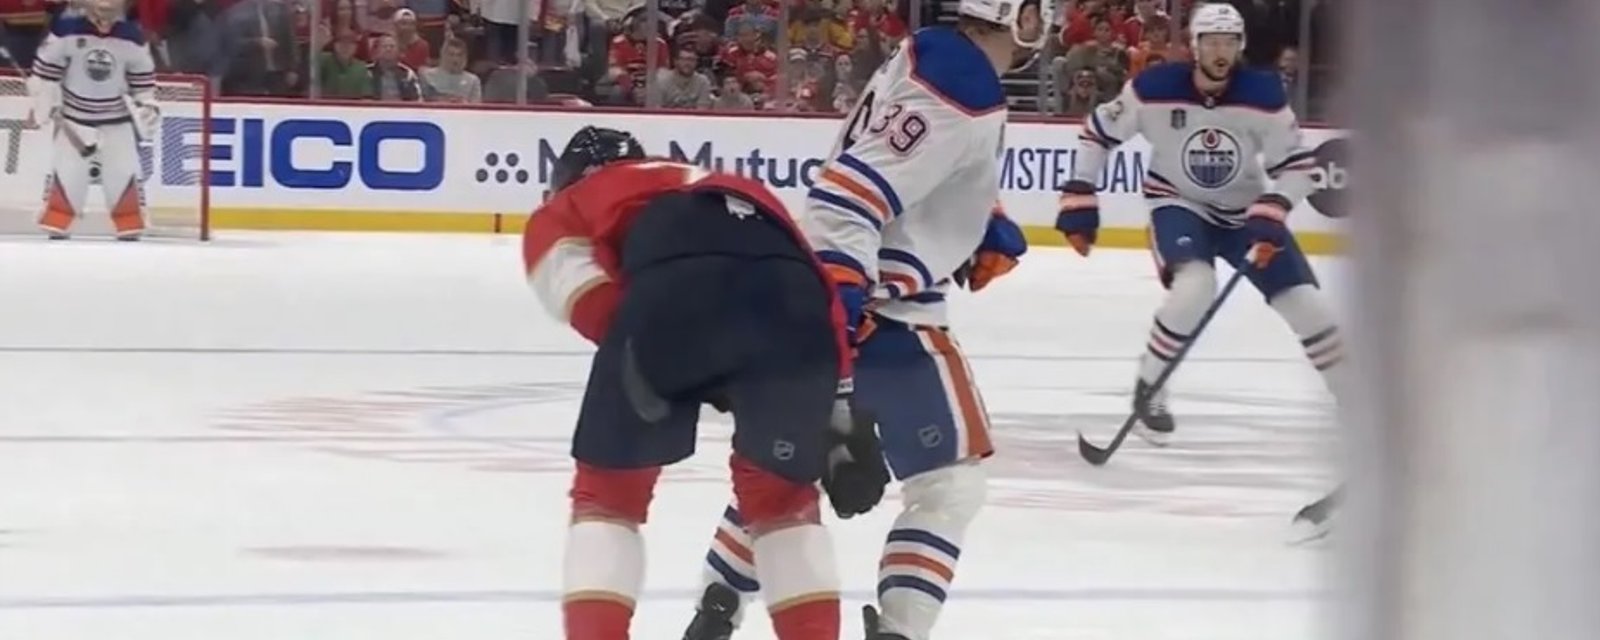 La LNH sévit contre un joueur des Oilers après le match #2